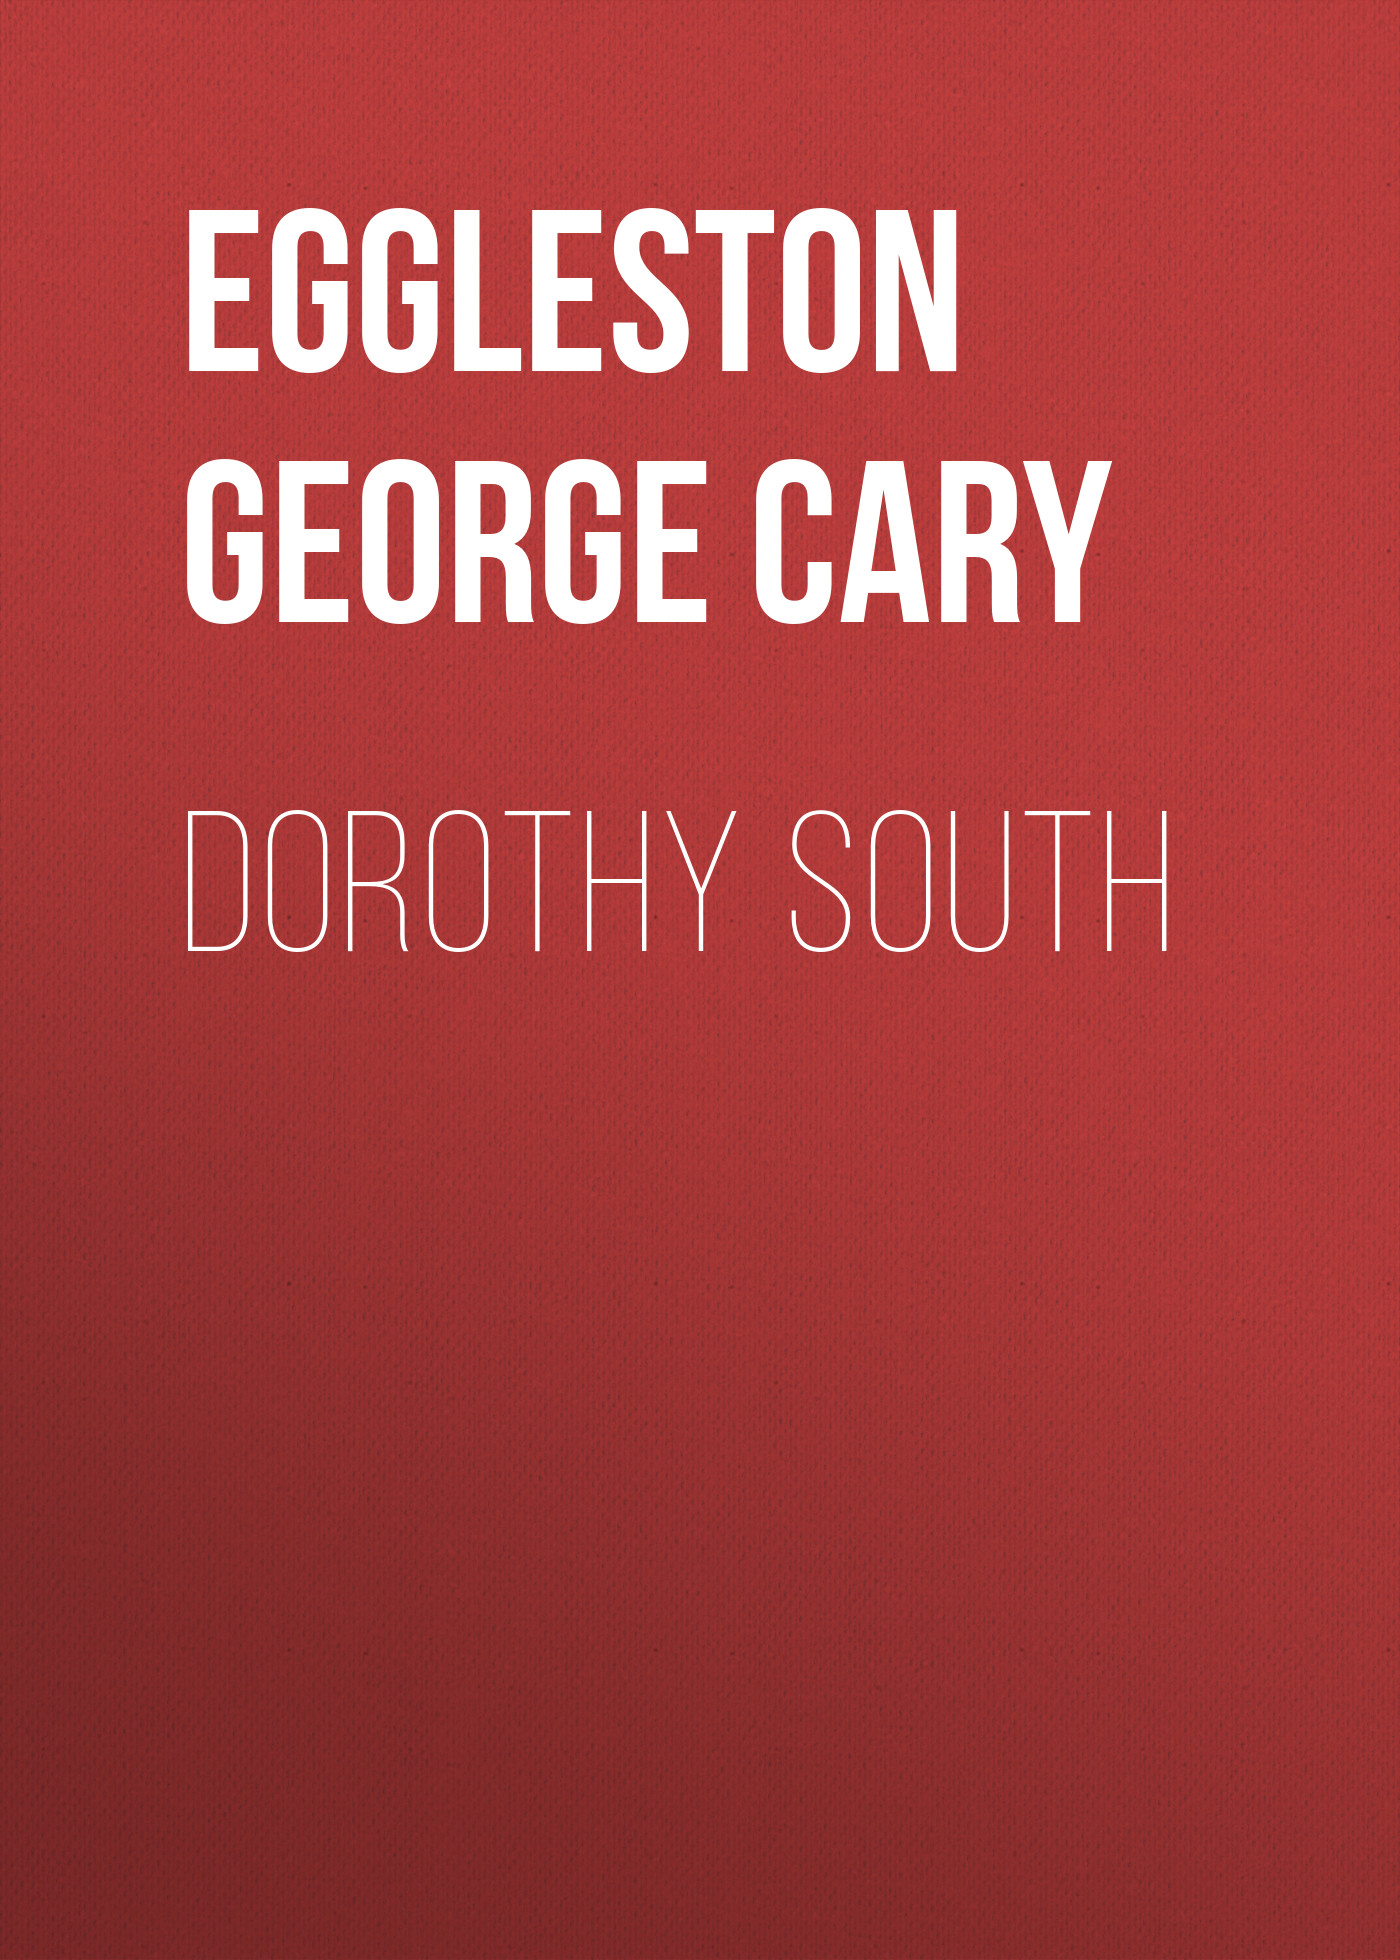 Книга Dorothy South из серии , созданная George Eggleston, может относится к жанру Зарубежная старинная литература, Зарубежная классика. Стоимость электронной книги Dorothy South с идентификатором 24714041 составляет 0 руб.